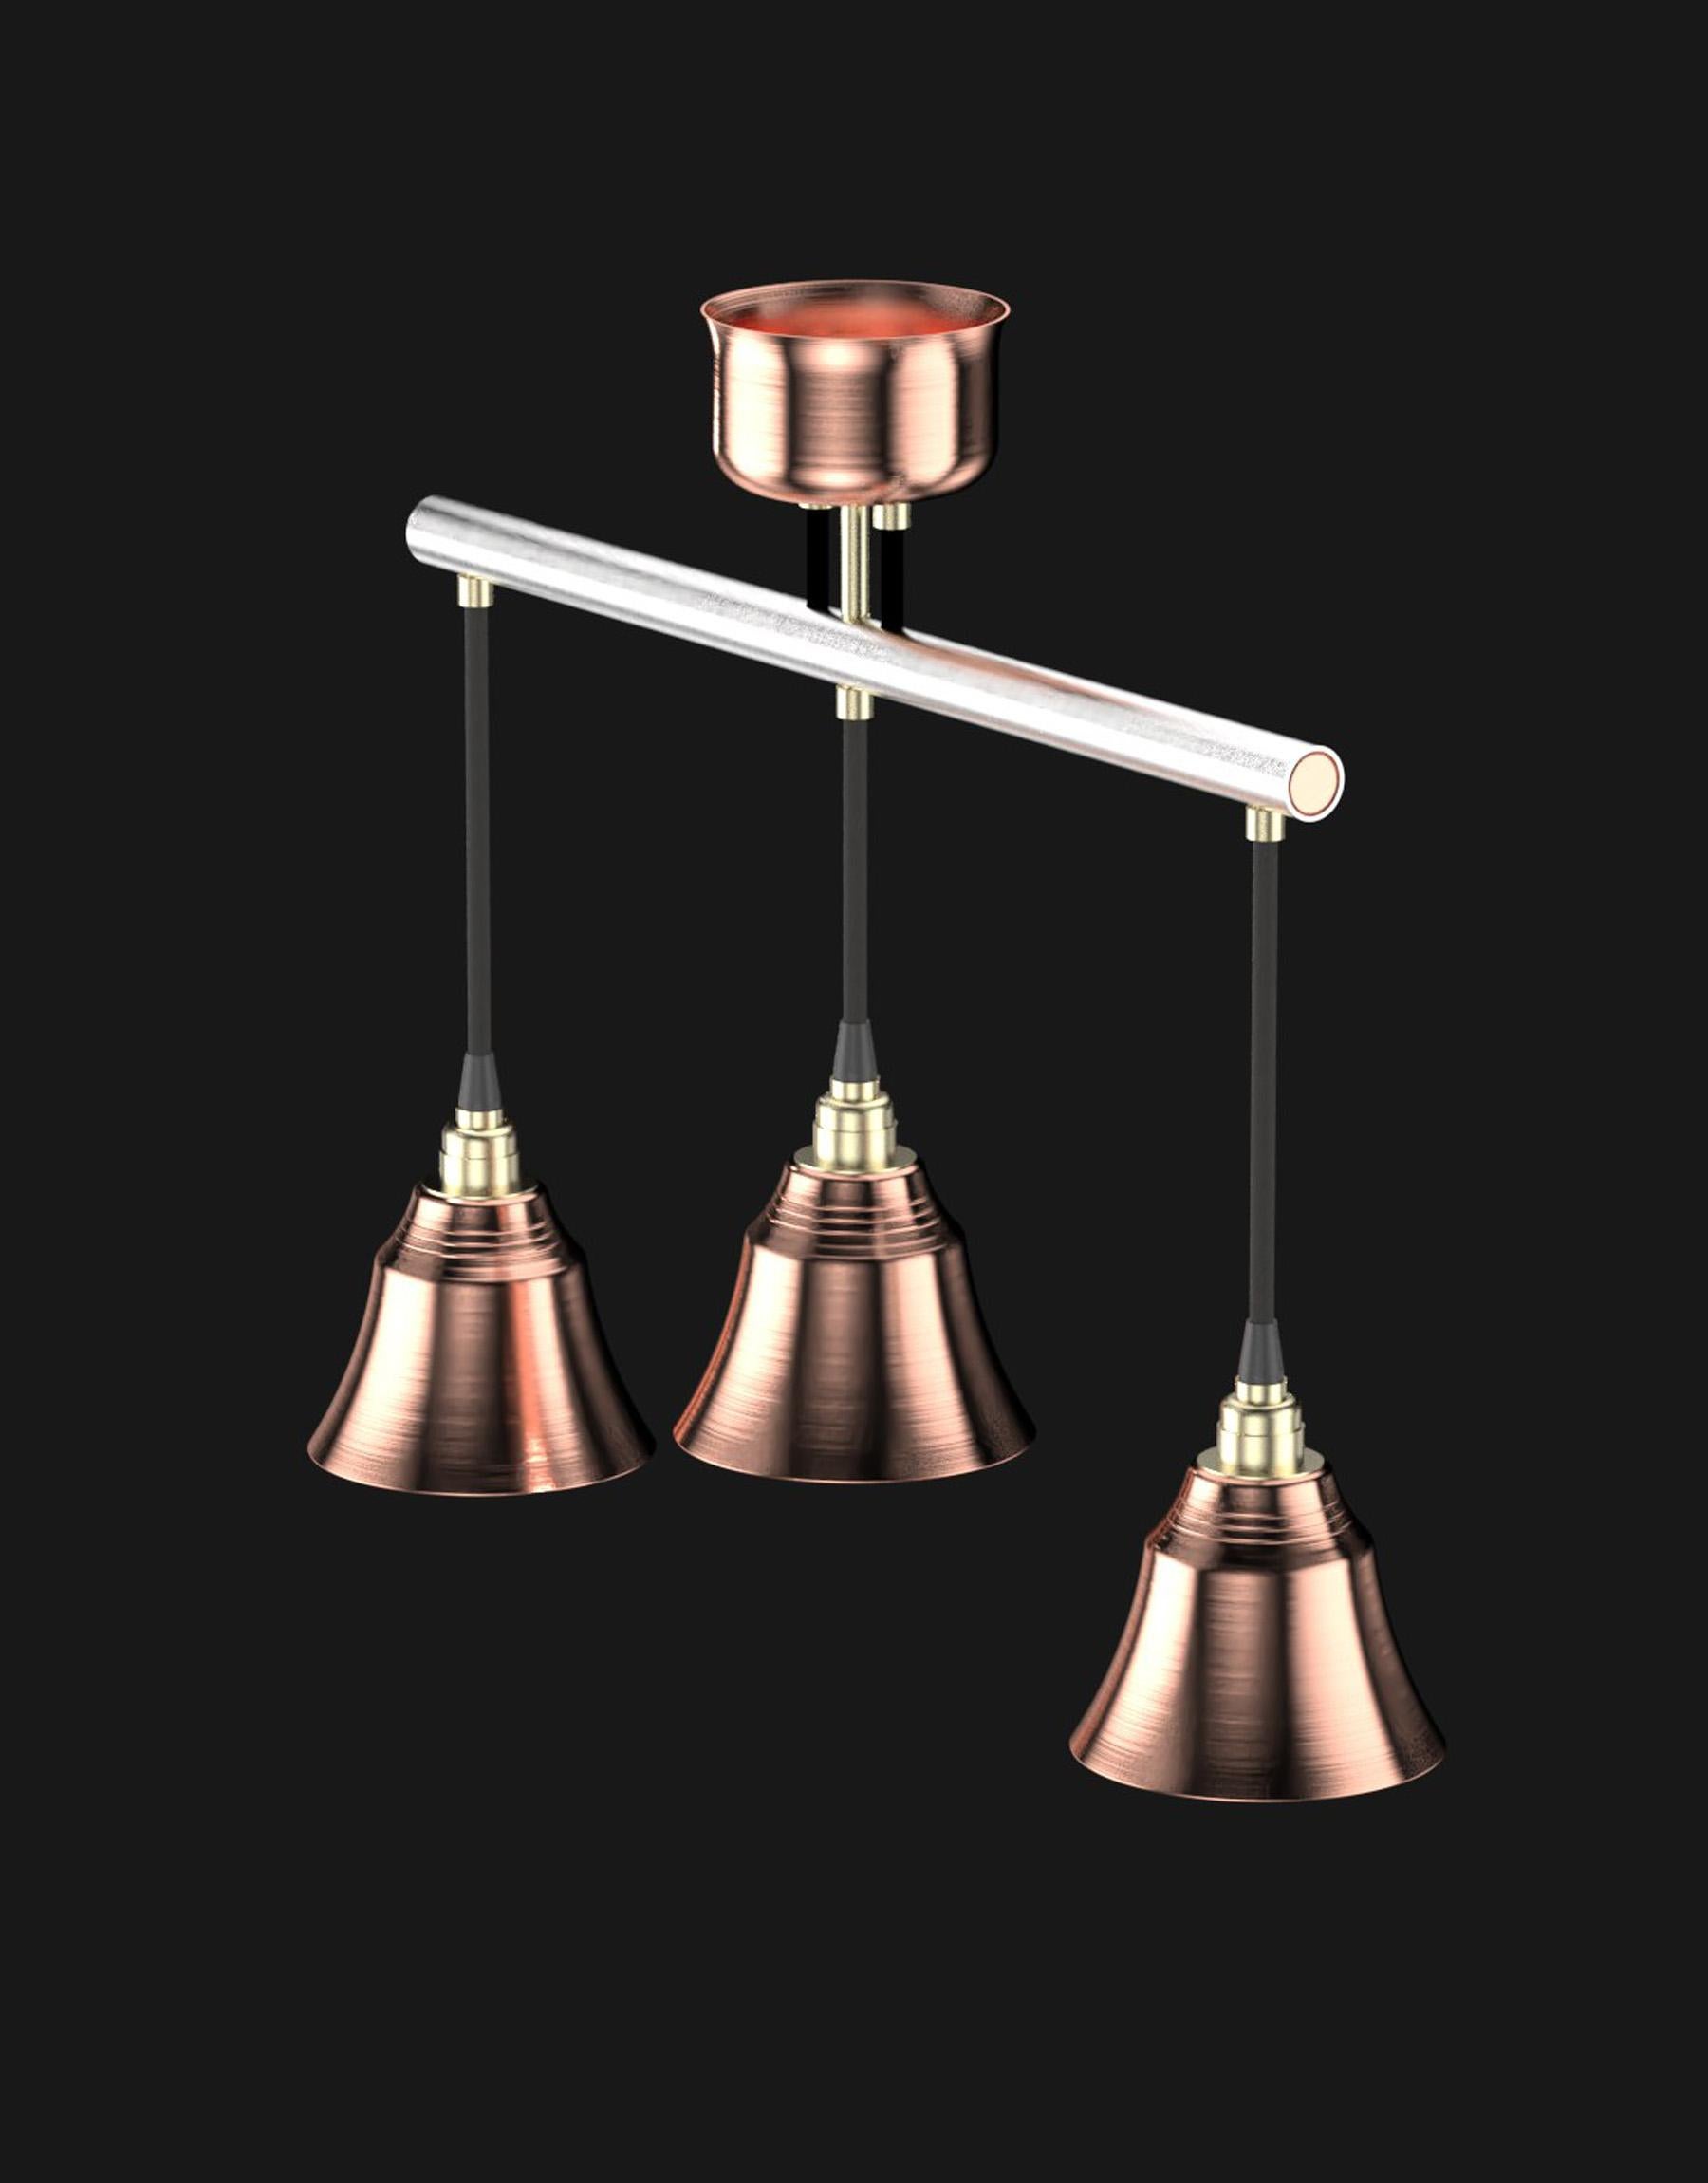 Industrial Edimate Stainless Steel / Copper Spot V2 Ceiling Light, Handmade in France For Sale